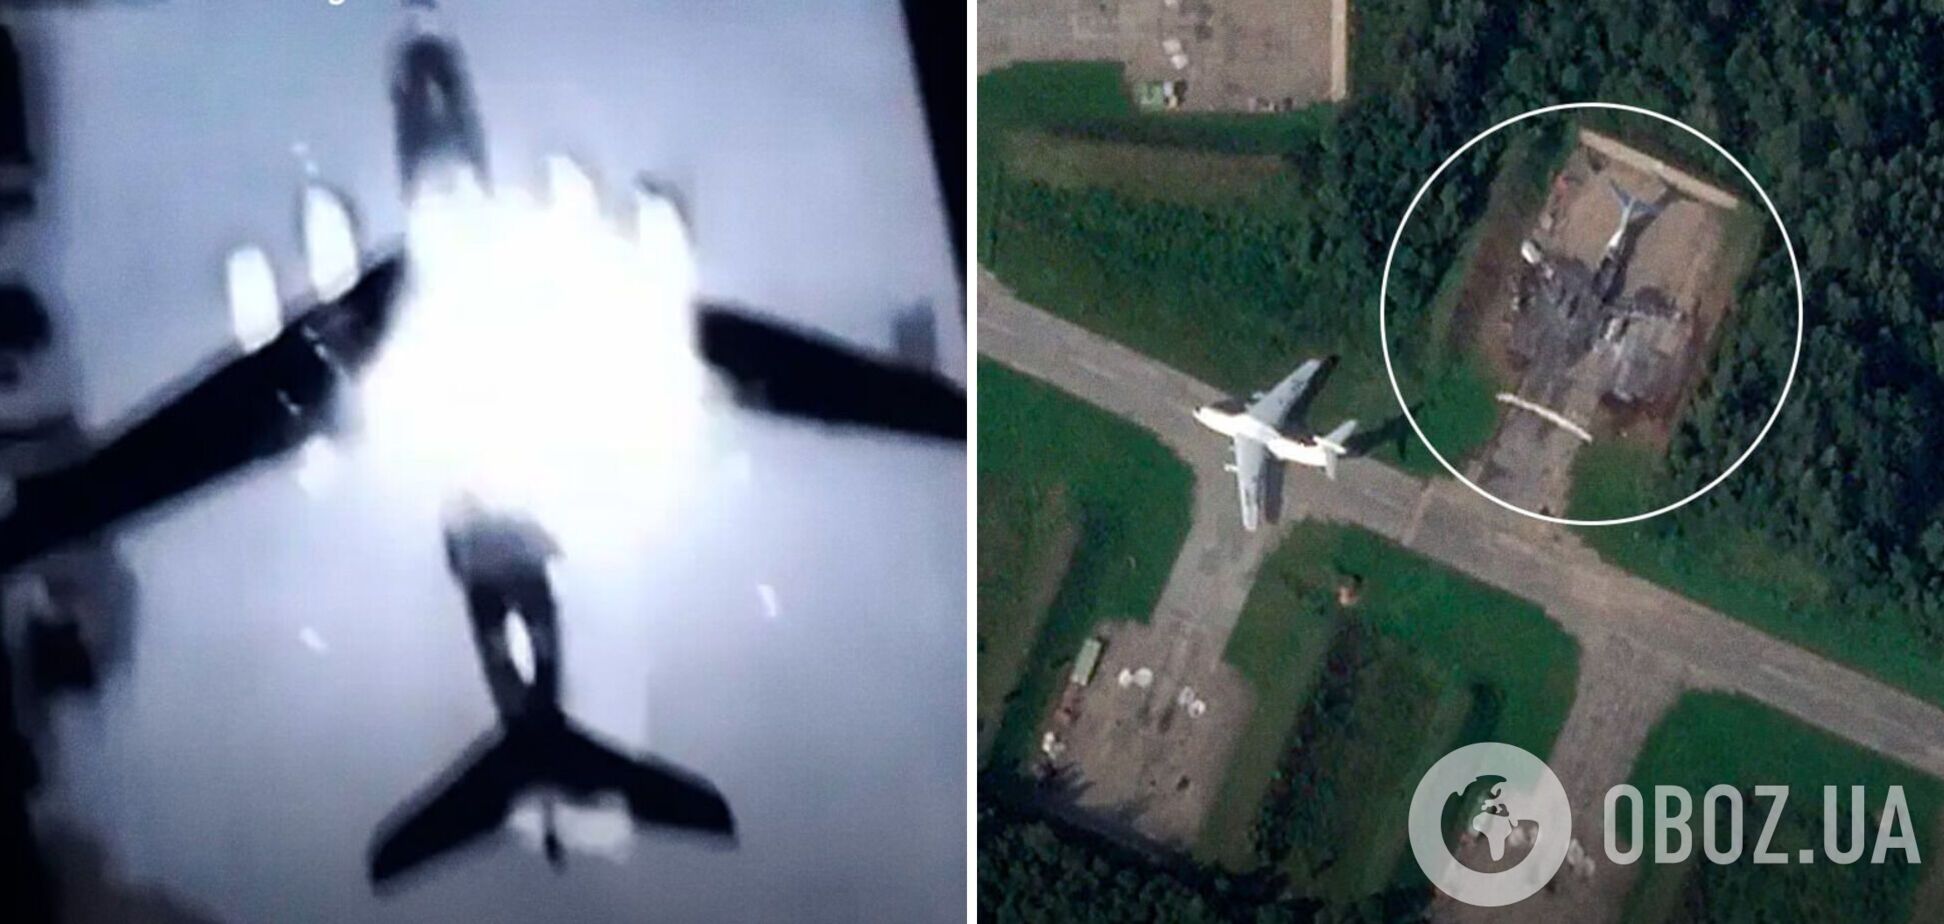 Дроны были нацелены на топливные баки: появились новые снимки уничтоженных и поврежденных самолетов на аэродроме в Пскове